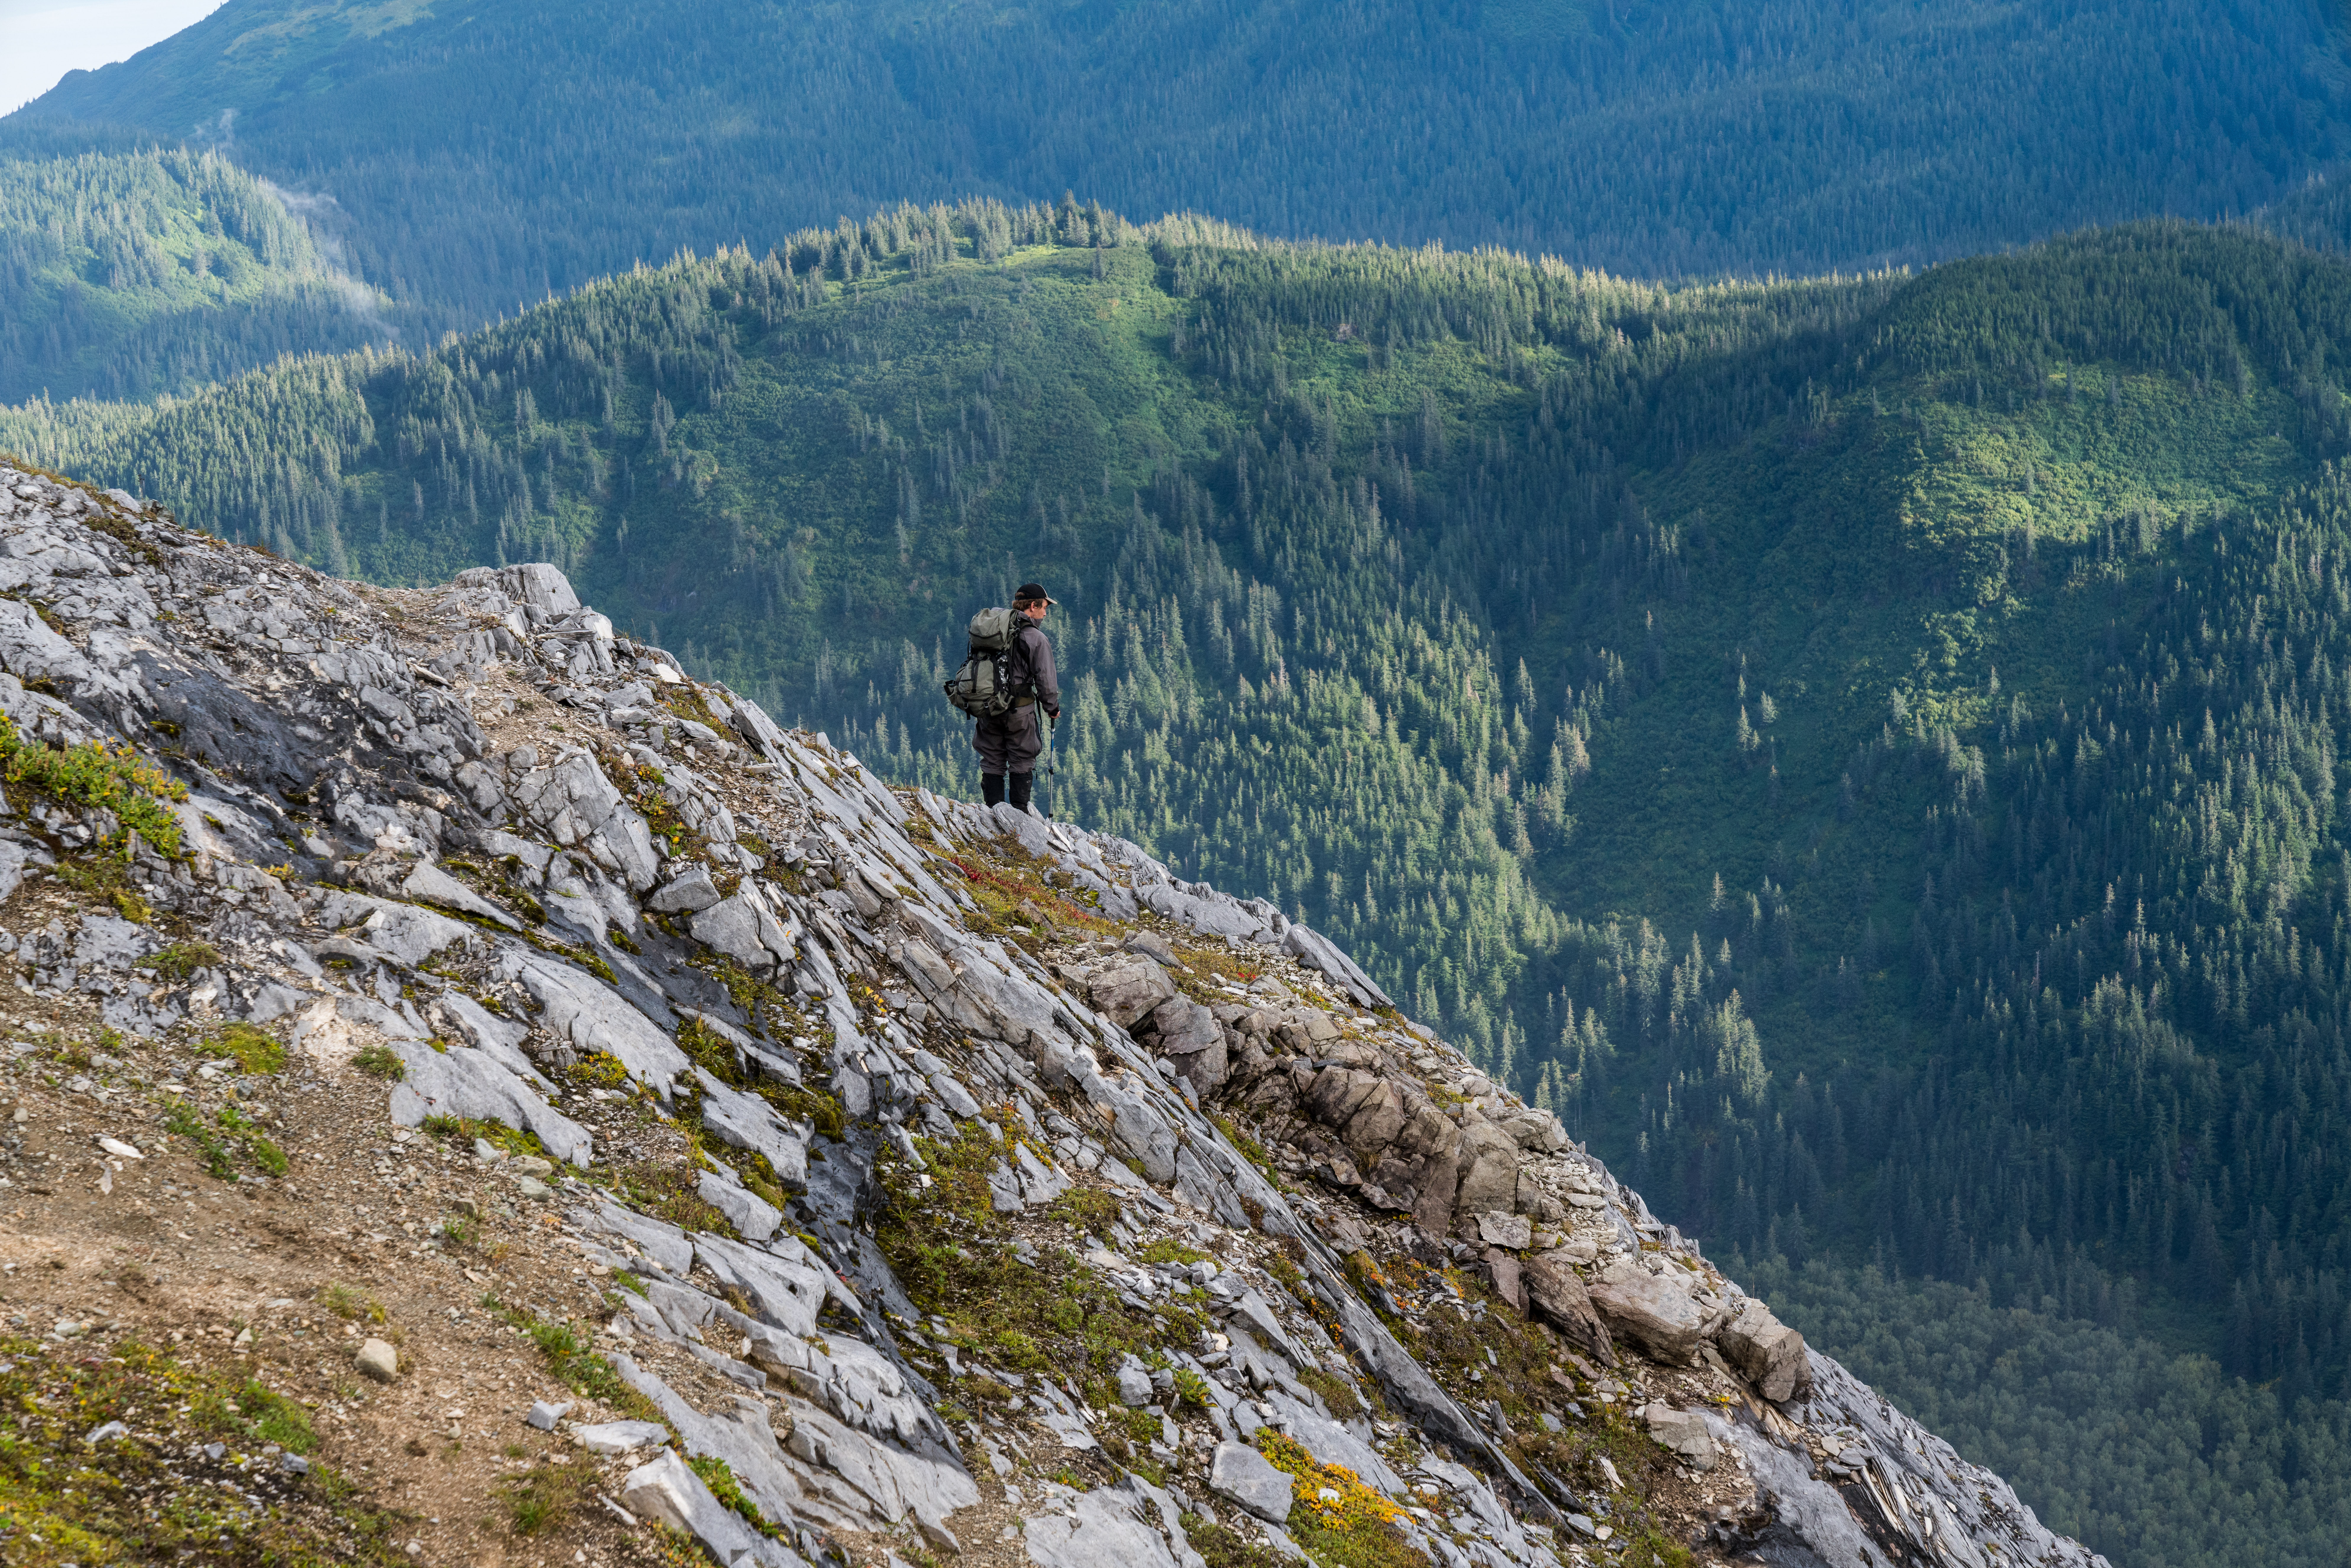 A mountain goat hunter checks a ridge